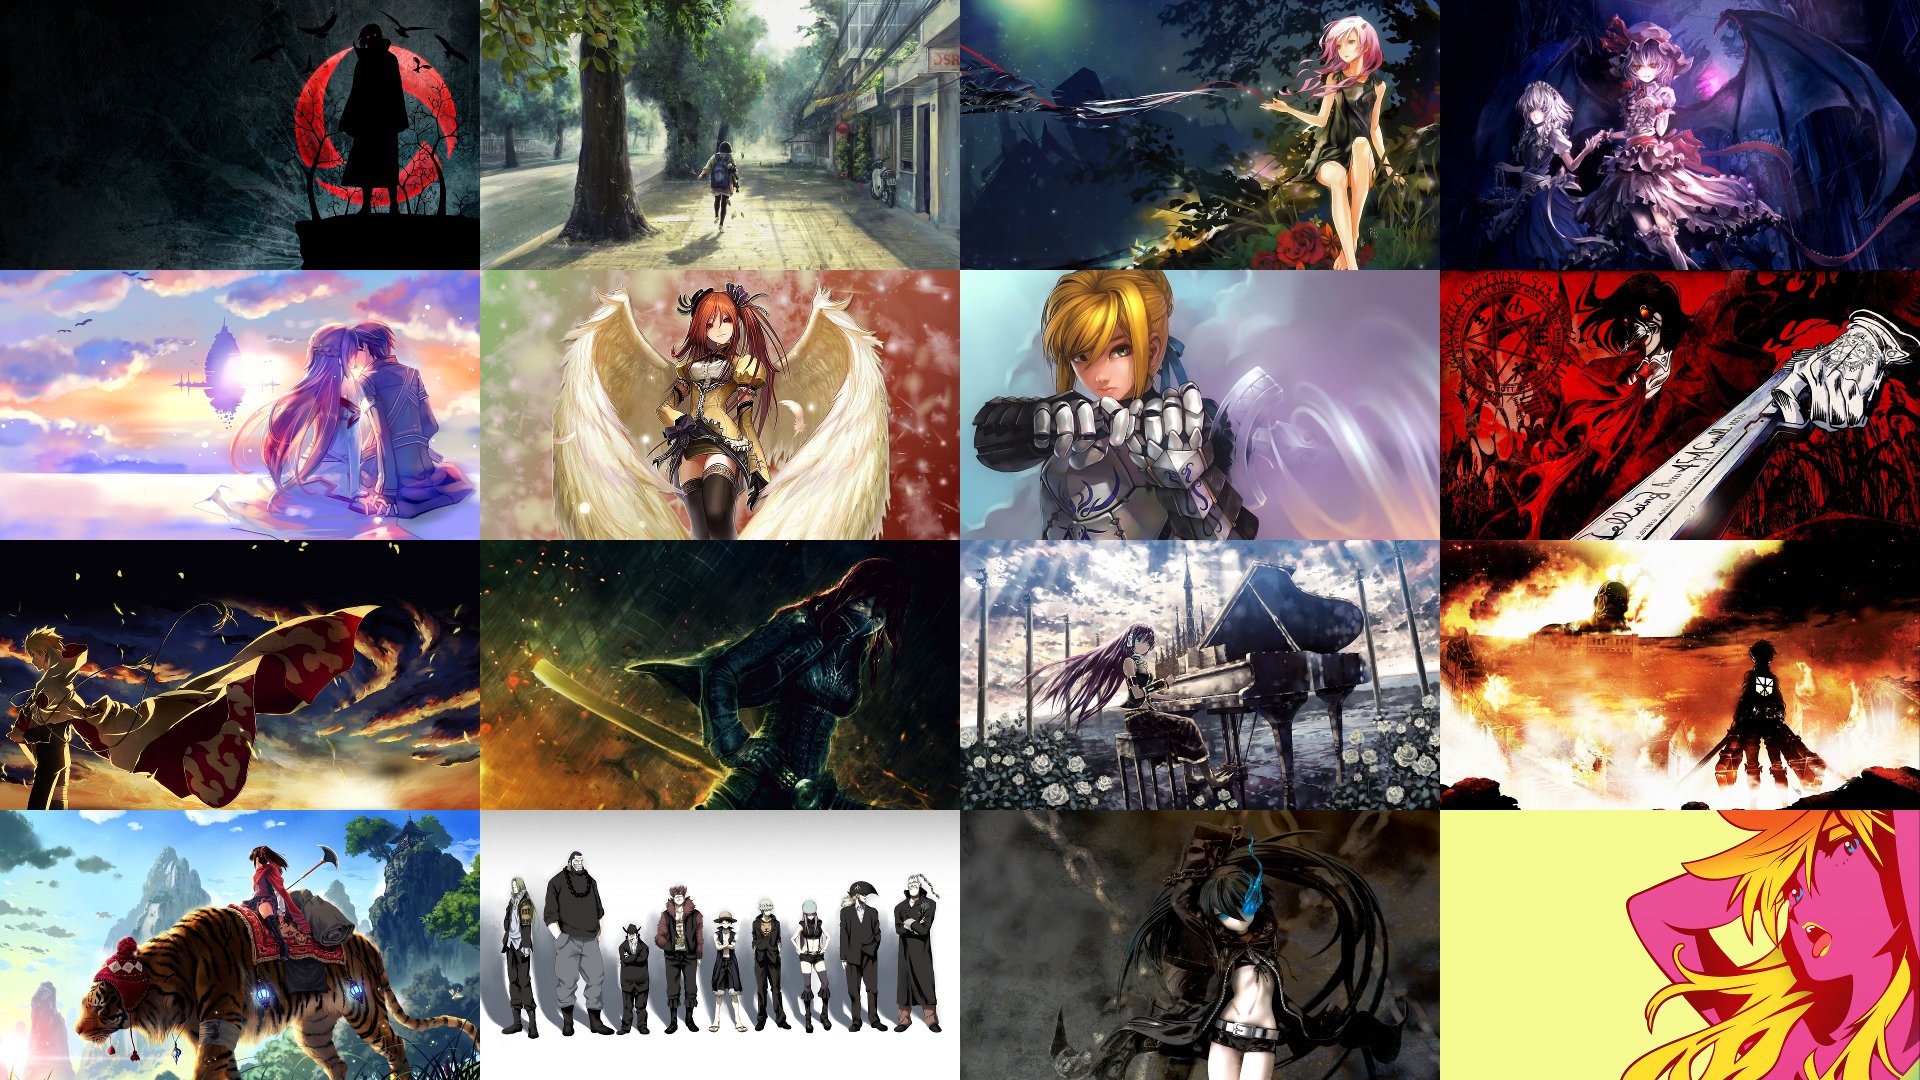 fond d'écran de animes hd,jeu d'aventure d'action,jeux,art,oeuvre de cg,conception graphique